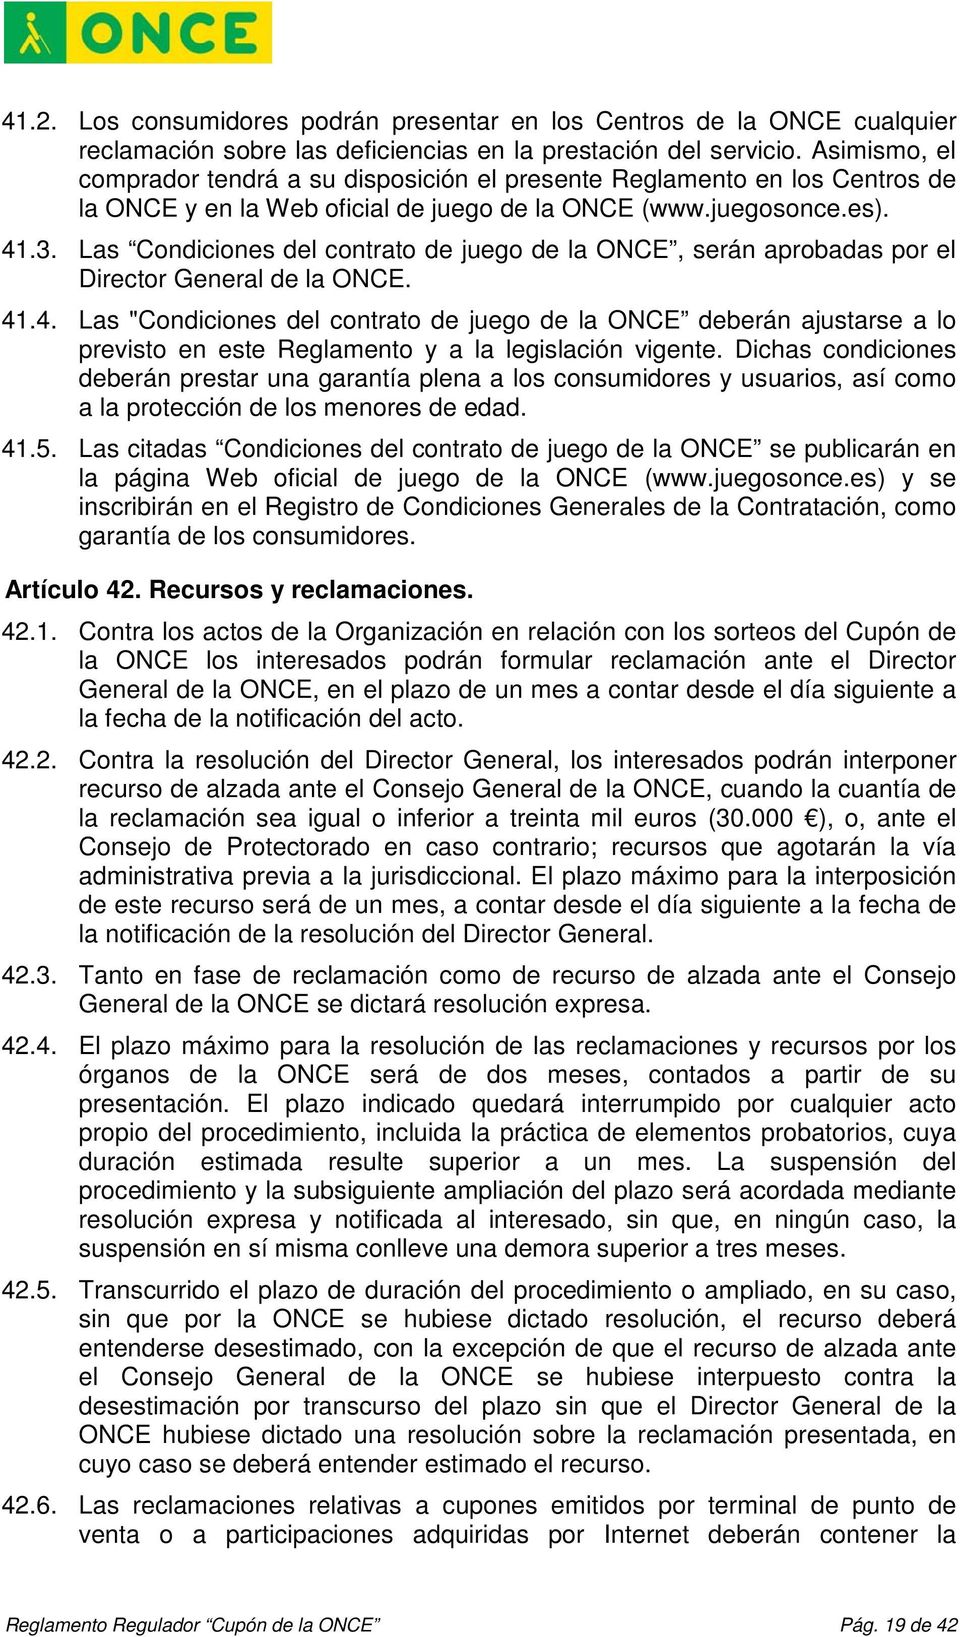 Las Condiciones del contrato de juego de la ONCE, serán aprobadas por el Director General de la ONCE. 41